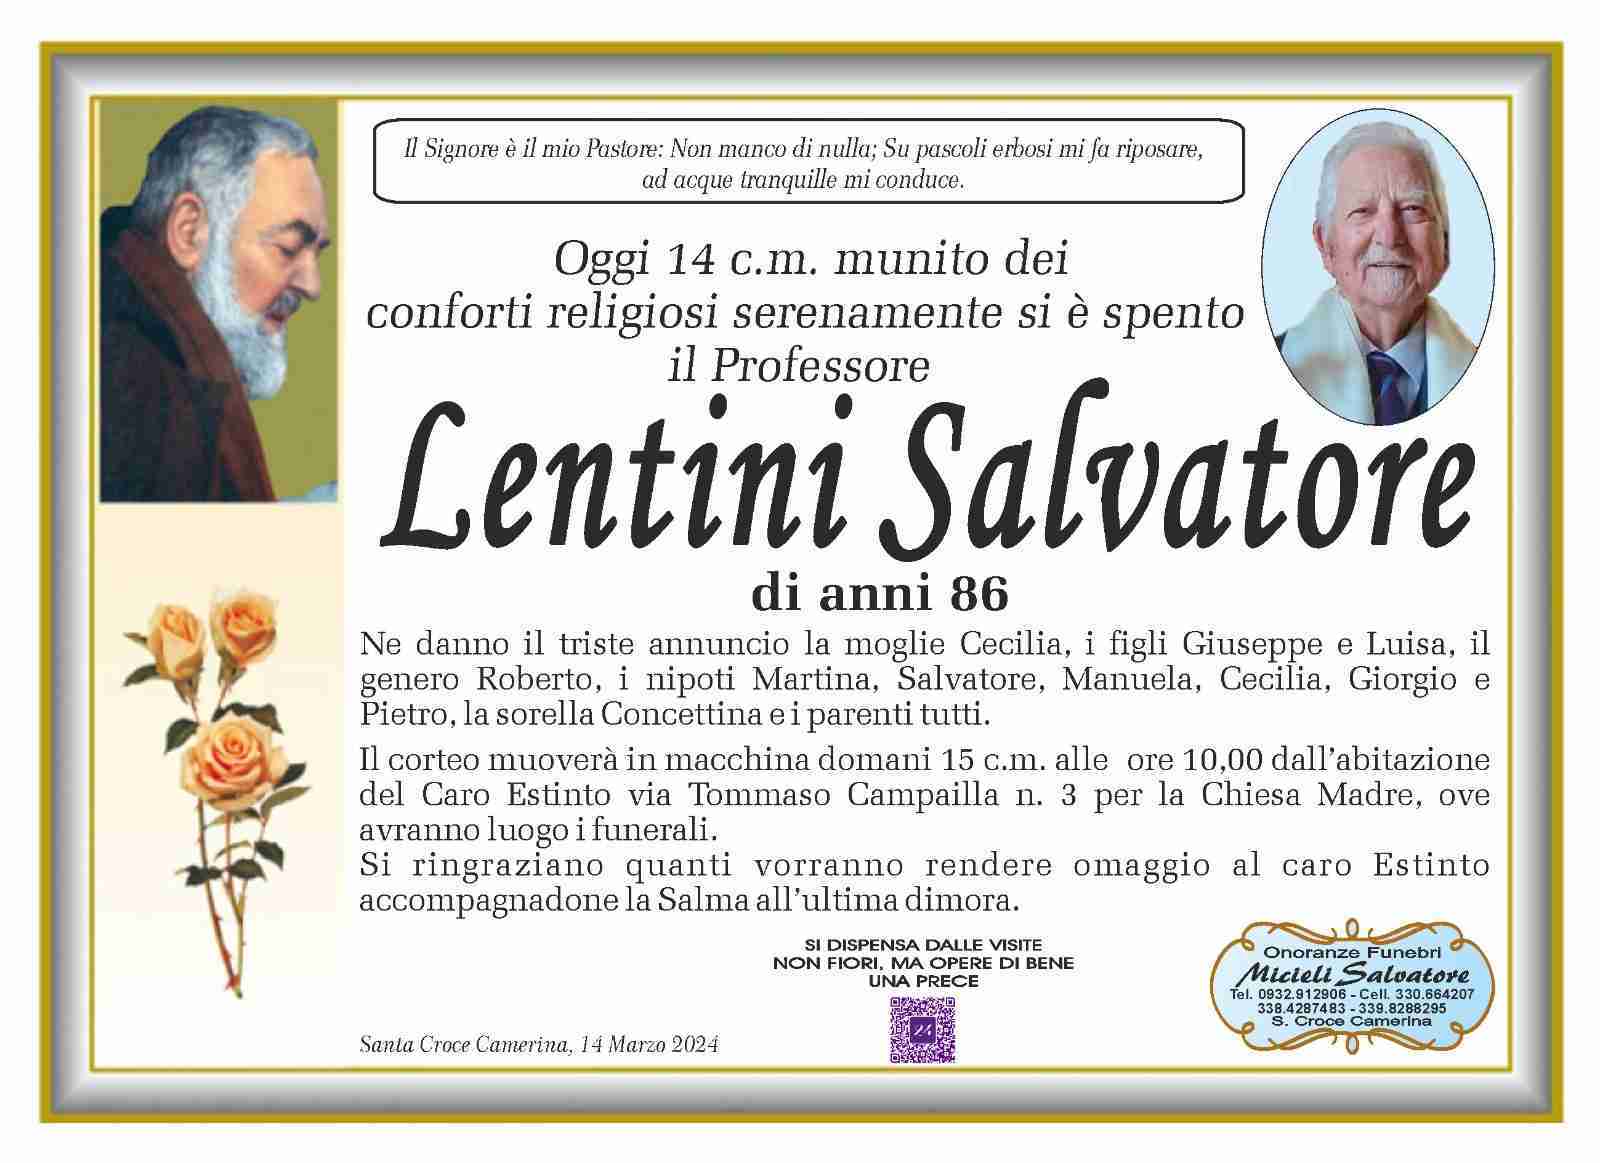 Salvatore Lentini